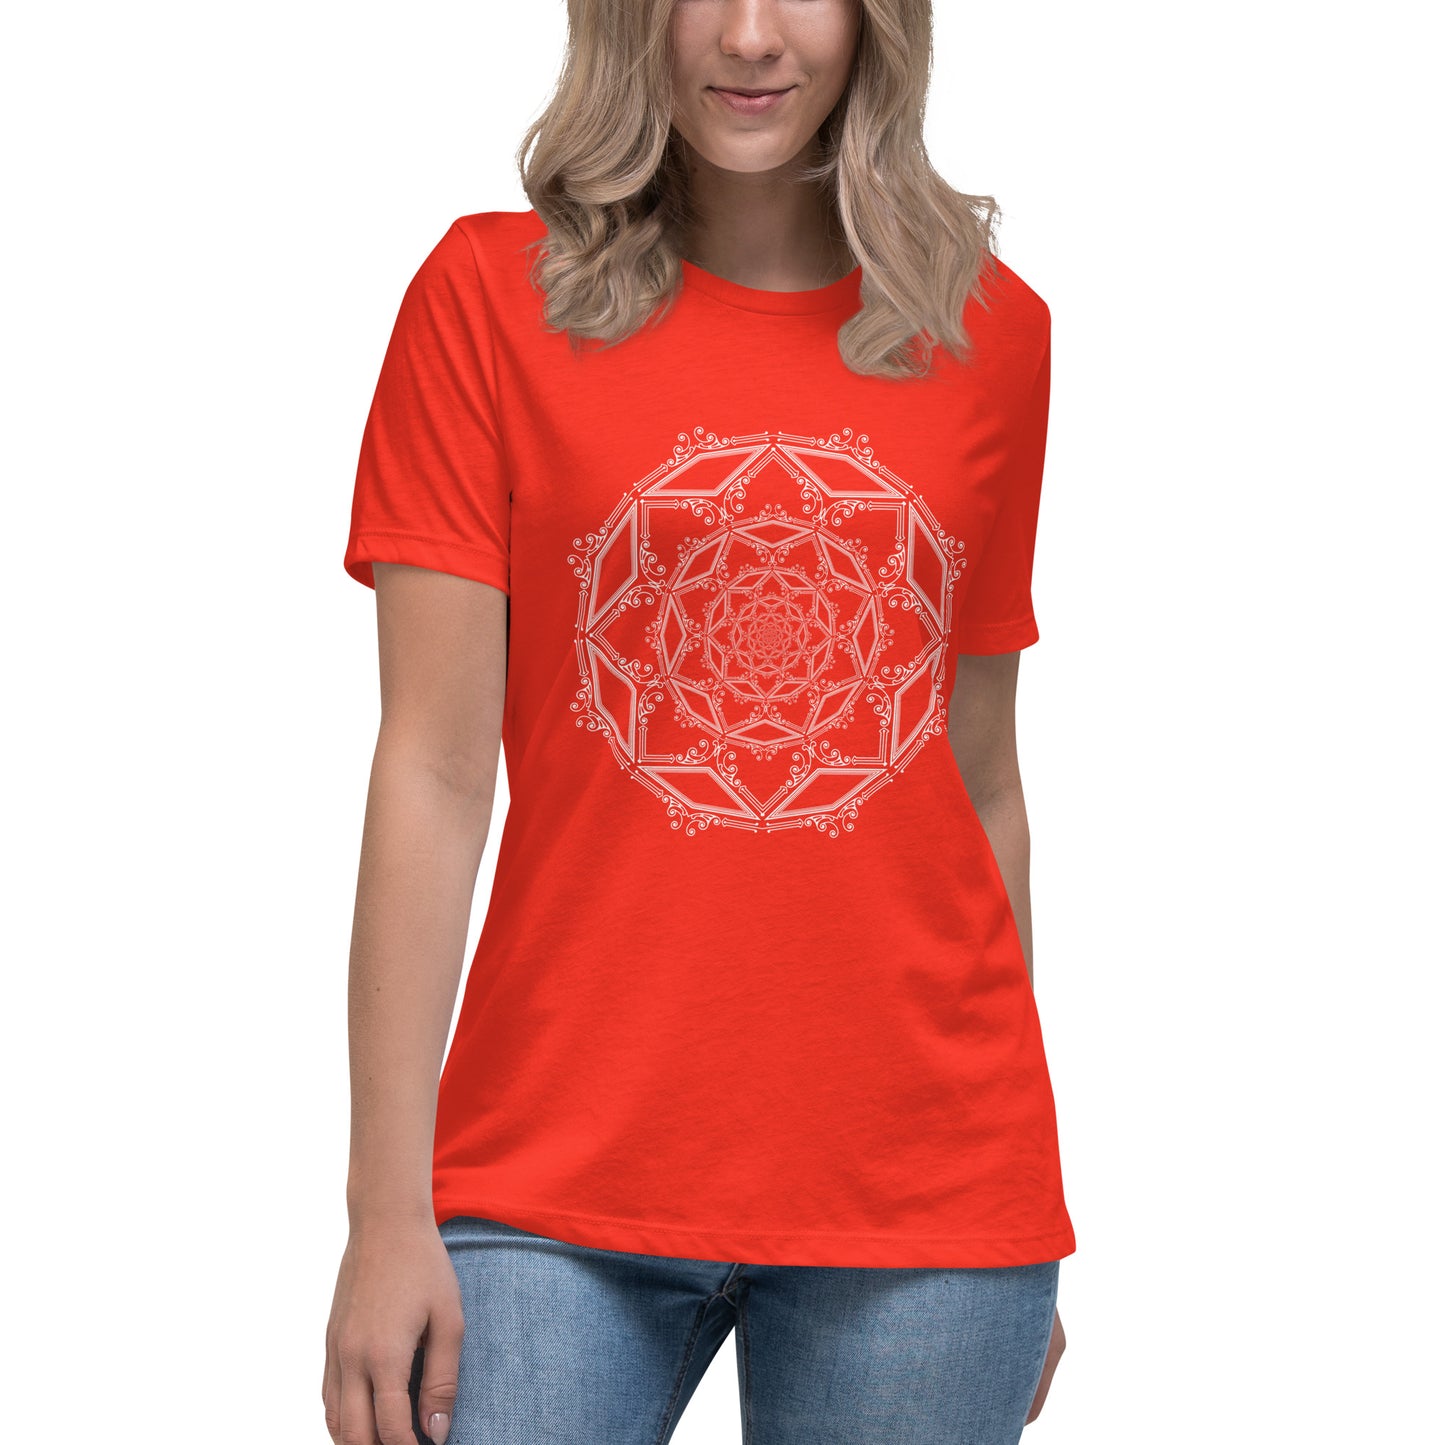 Mandala Women's T-Shirt